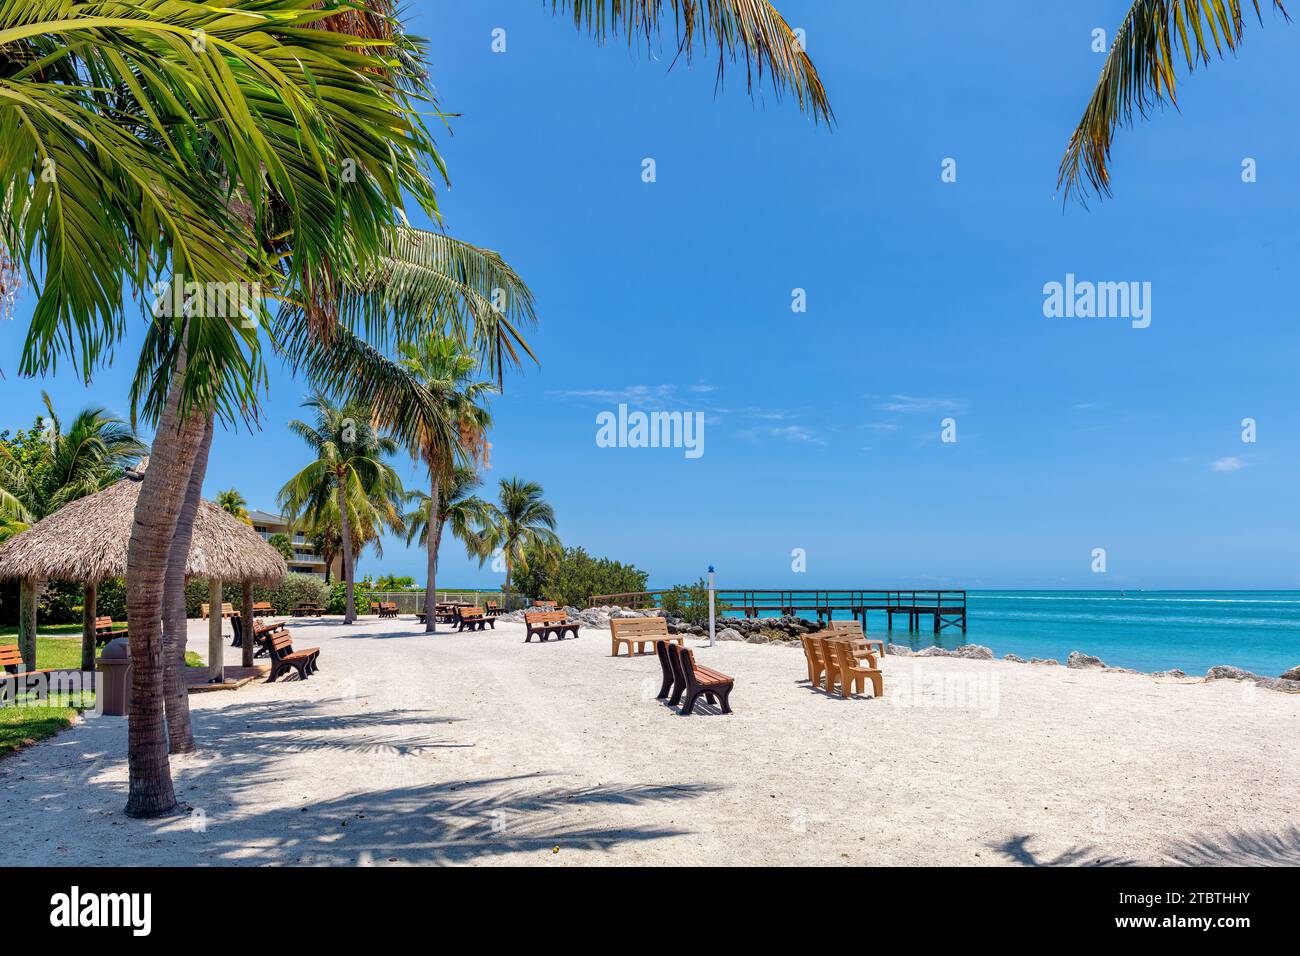 Palmen im Beach State Park auf der tropischen Insel Key Largo, Florida Stockfoto